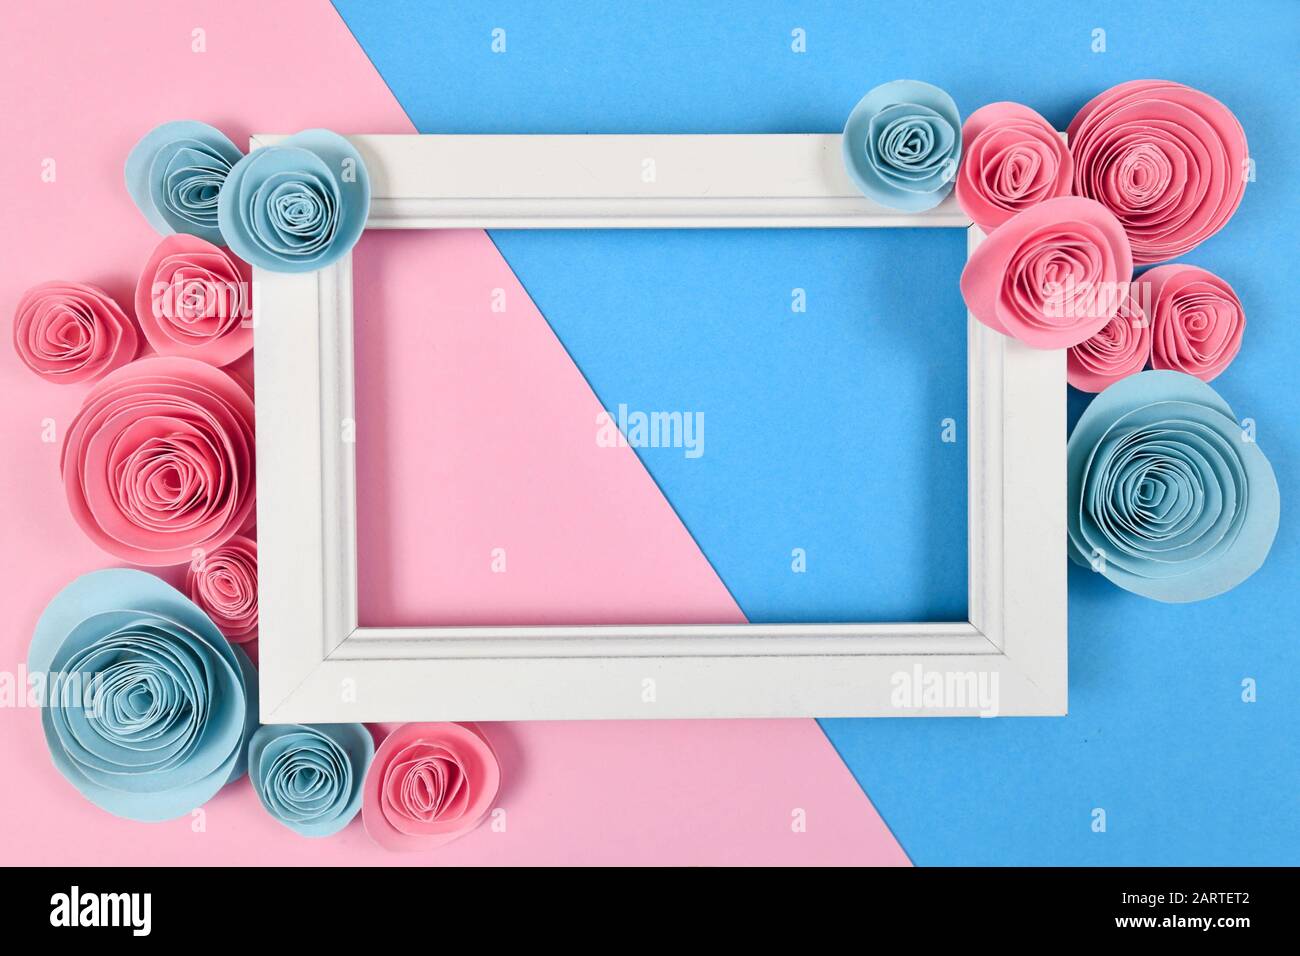 Cute piatto con cornice bianca vuota circondata da romantiche rose artigianali di carta su sfondo blu pastello e rosa Foto Stock